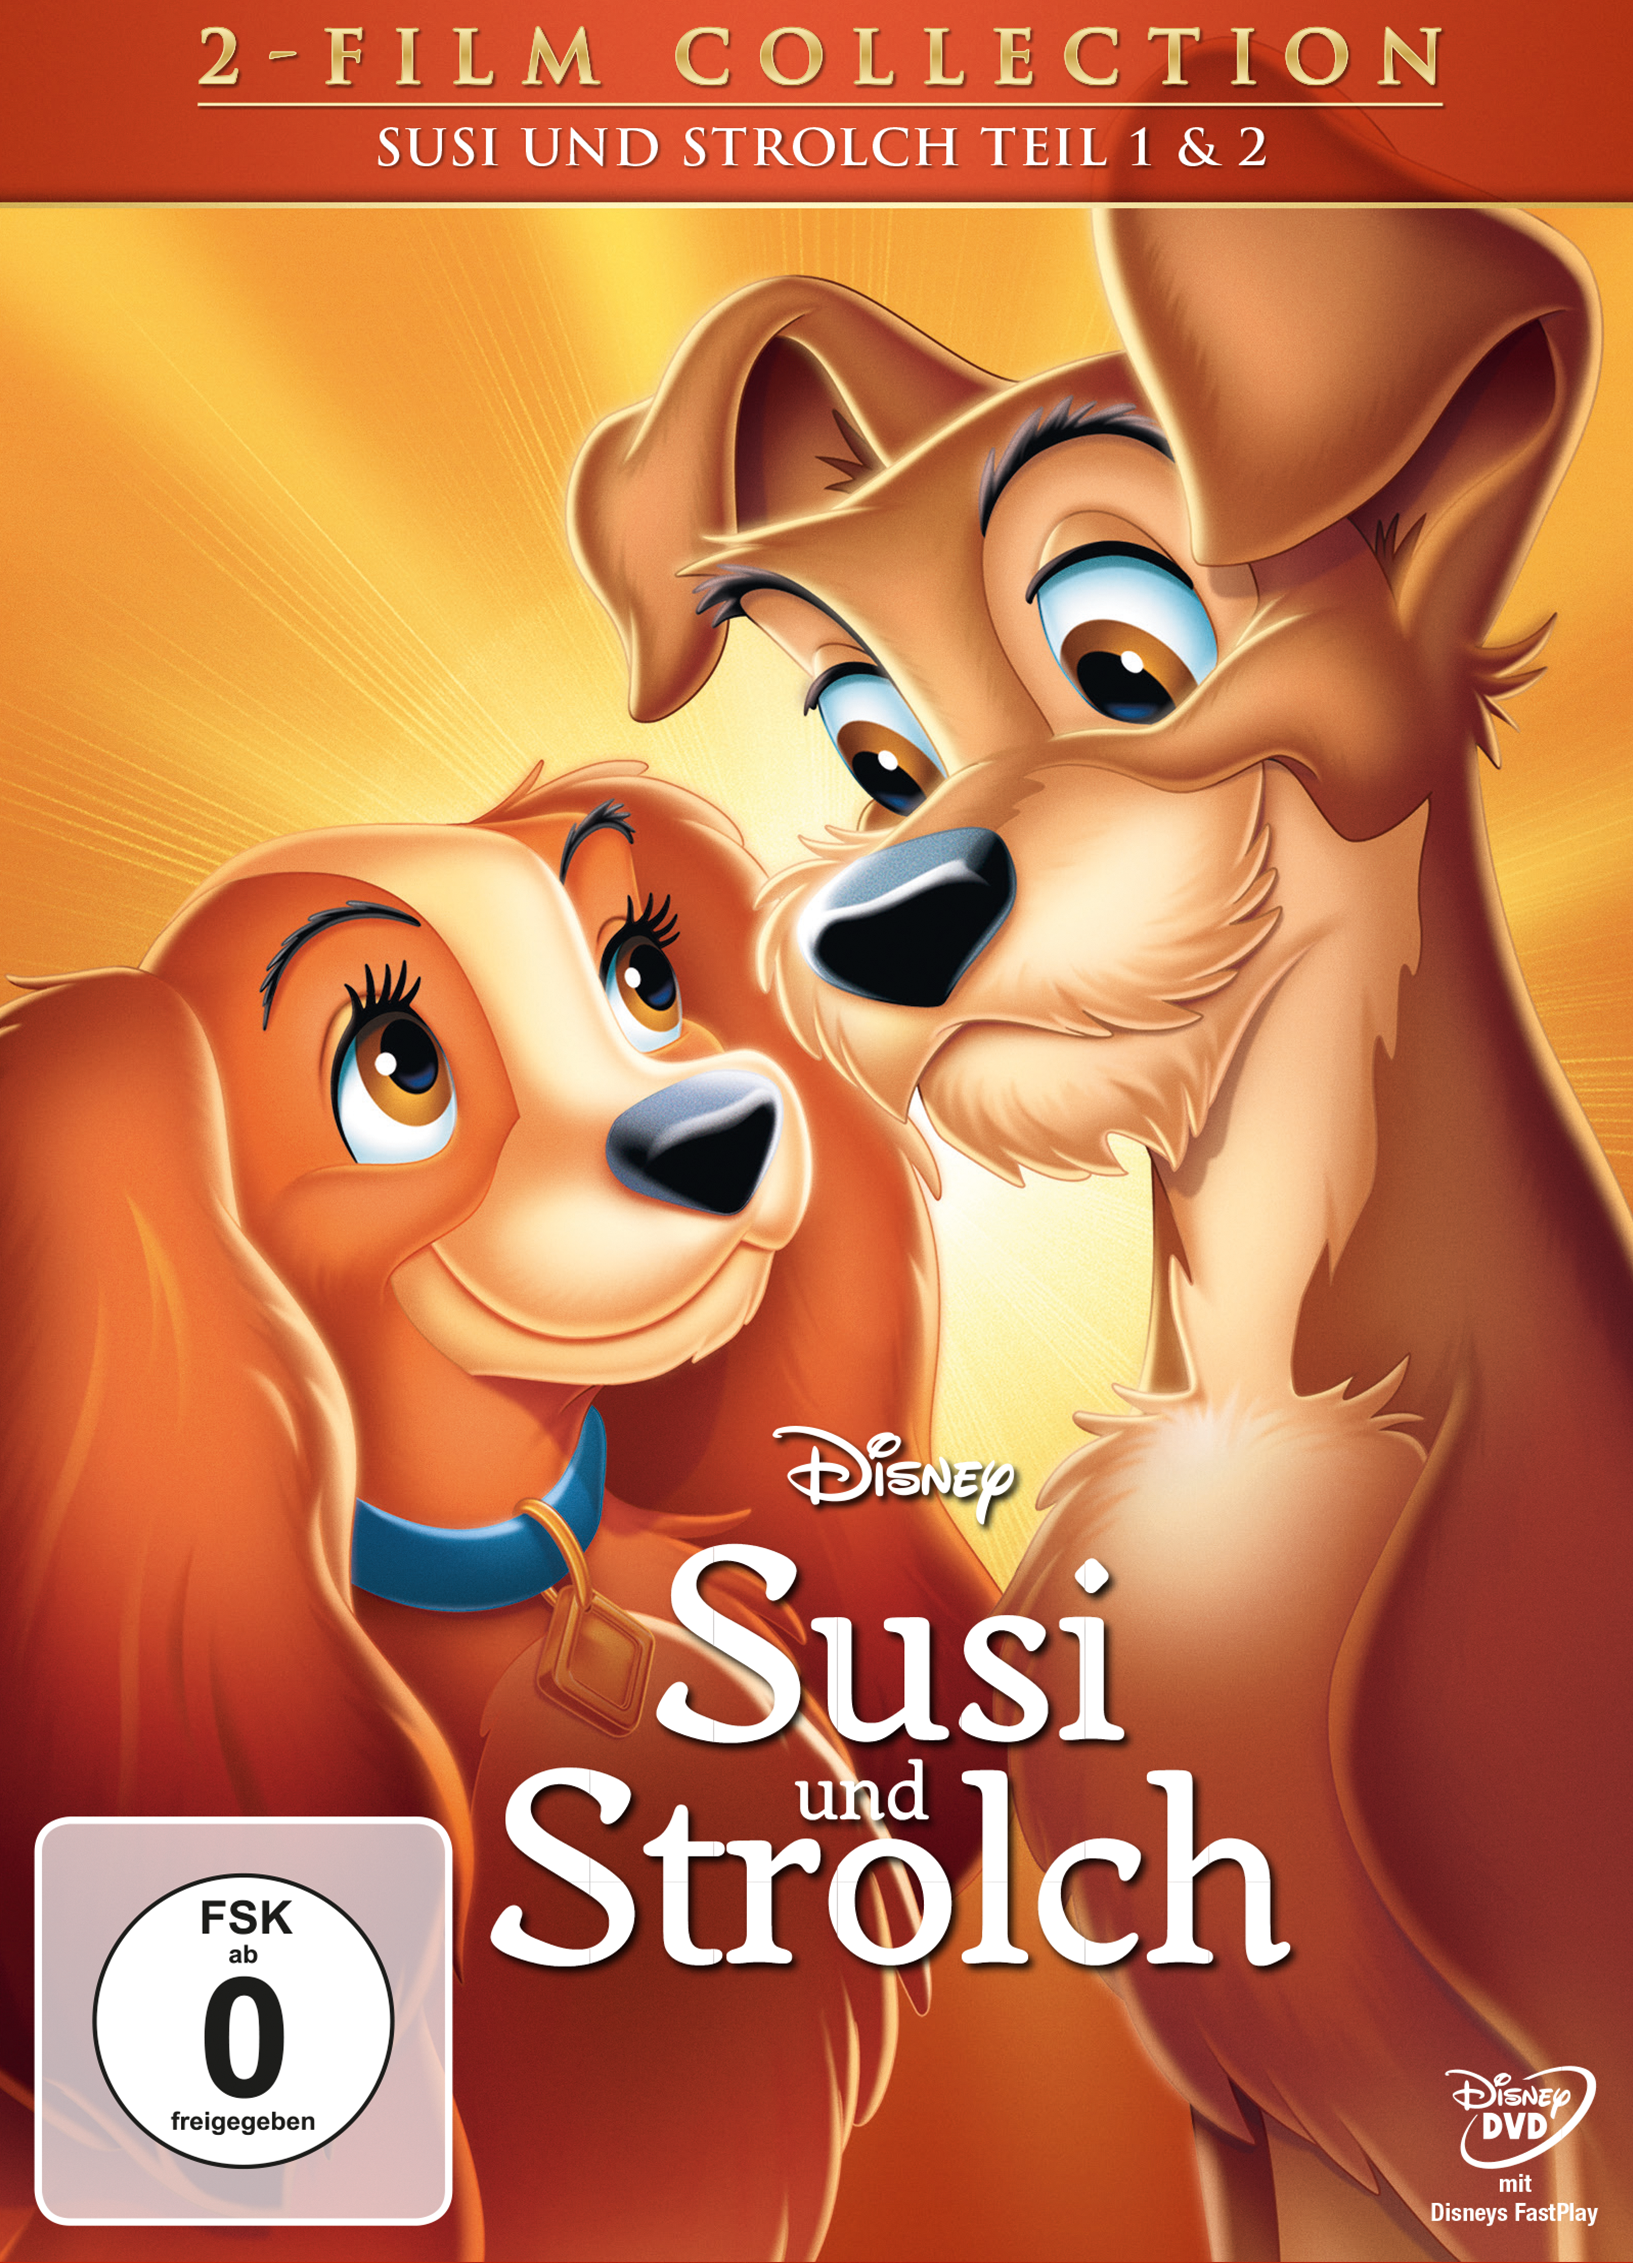 DVD + Strolch Strolch und und Susi - II Diamond Susi Edition